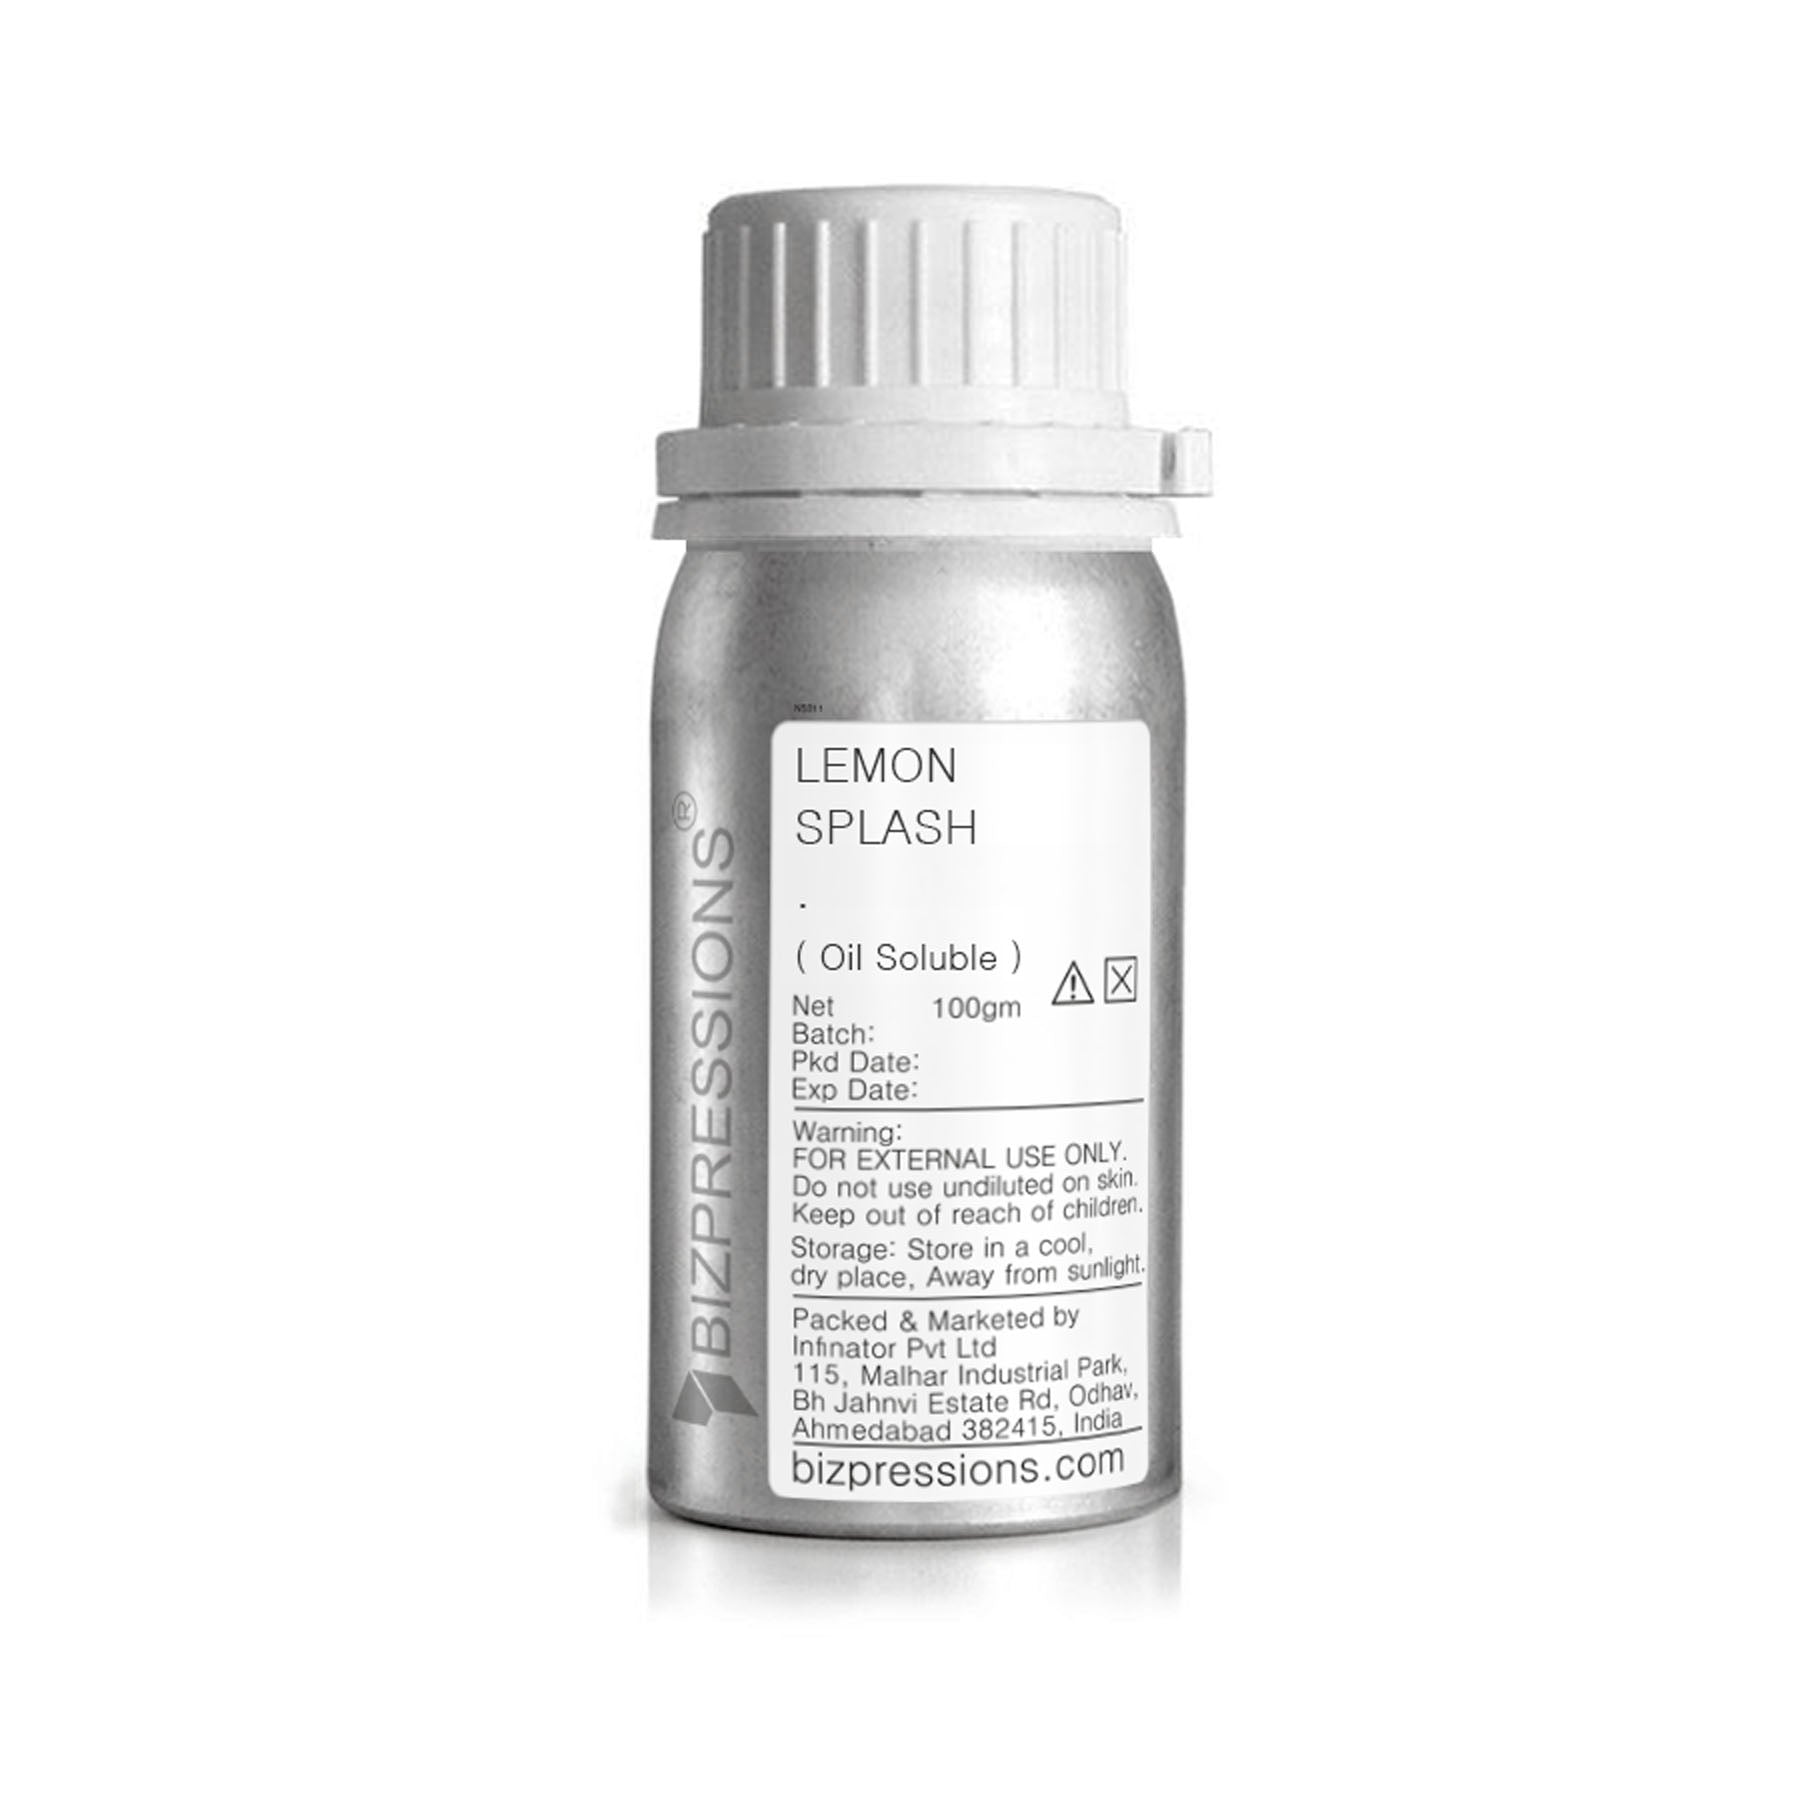 LEMON SPLASH - Fragrance ( Oil Soluble ) - 100 gm